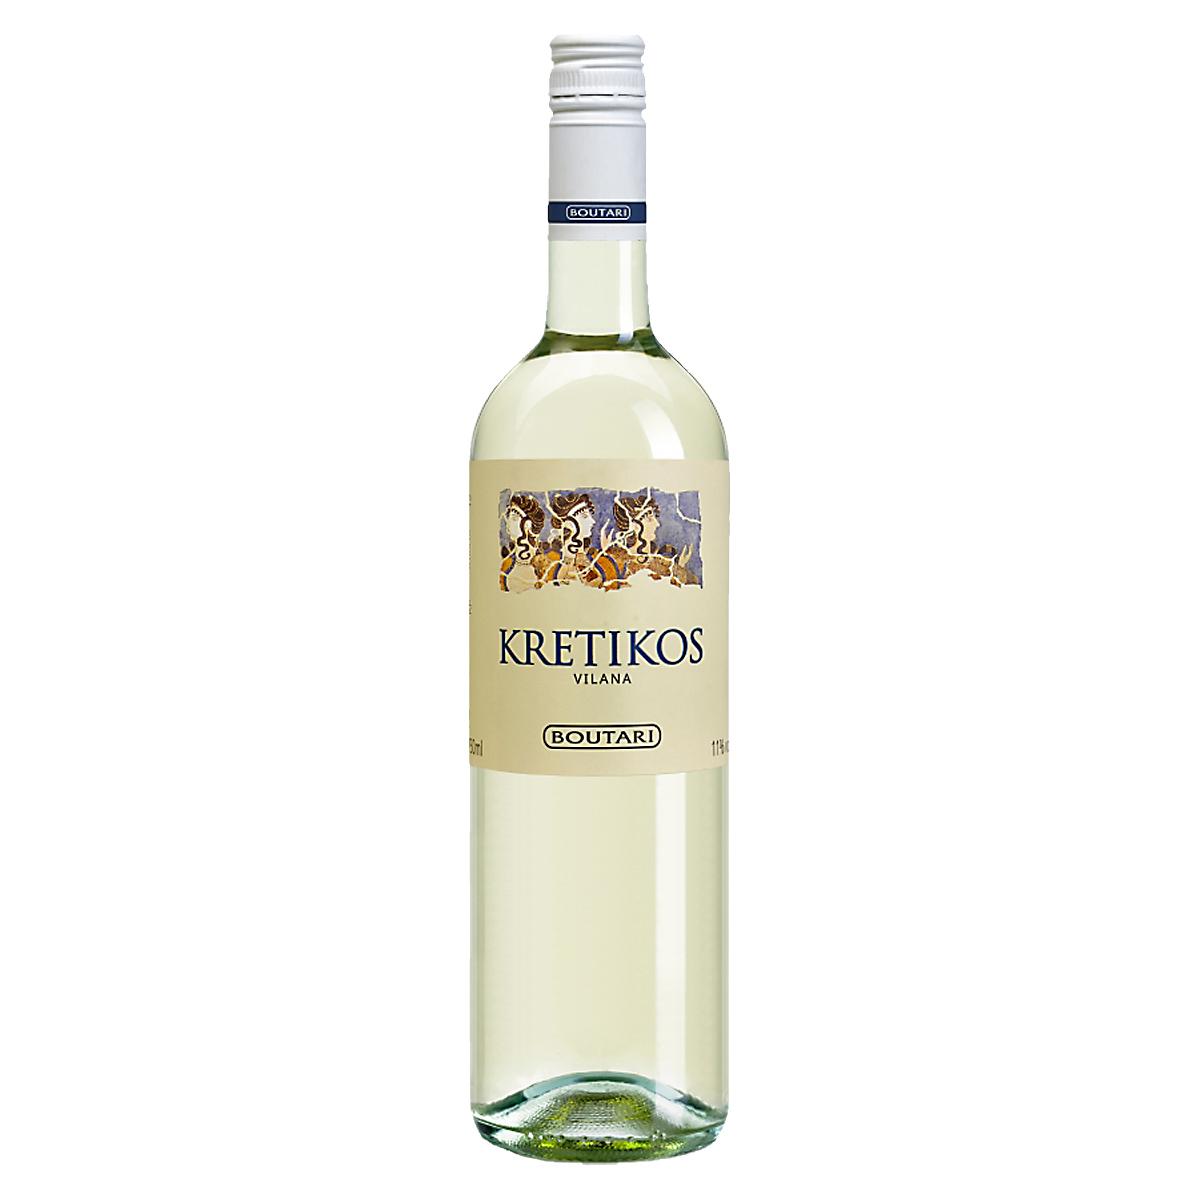 Kretikos weiß Boutari | Weißwein trocken (0,75 l) g.g.A. Kreta